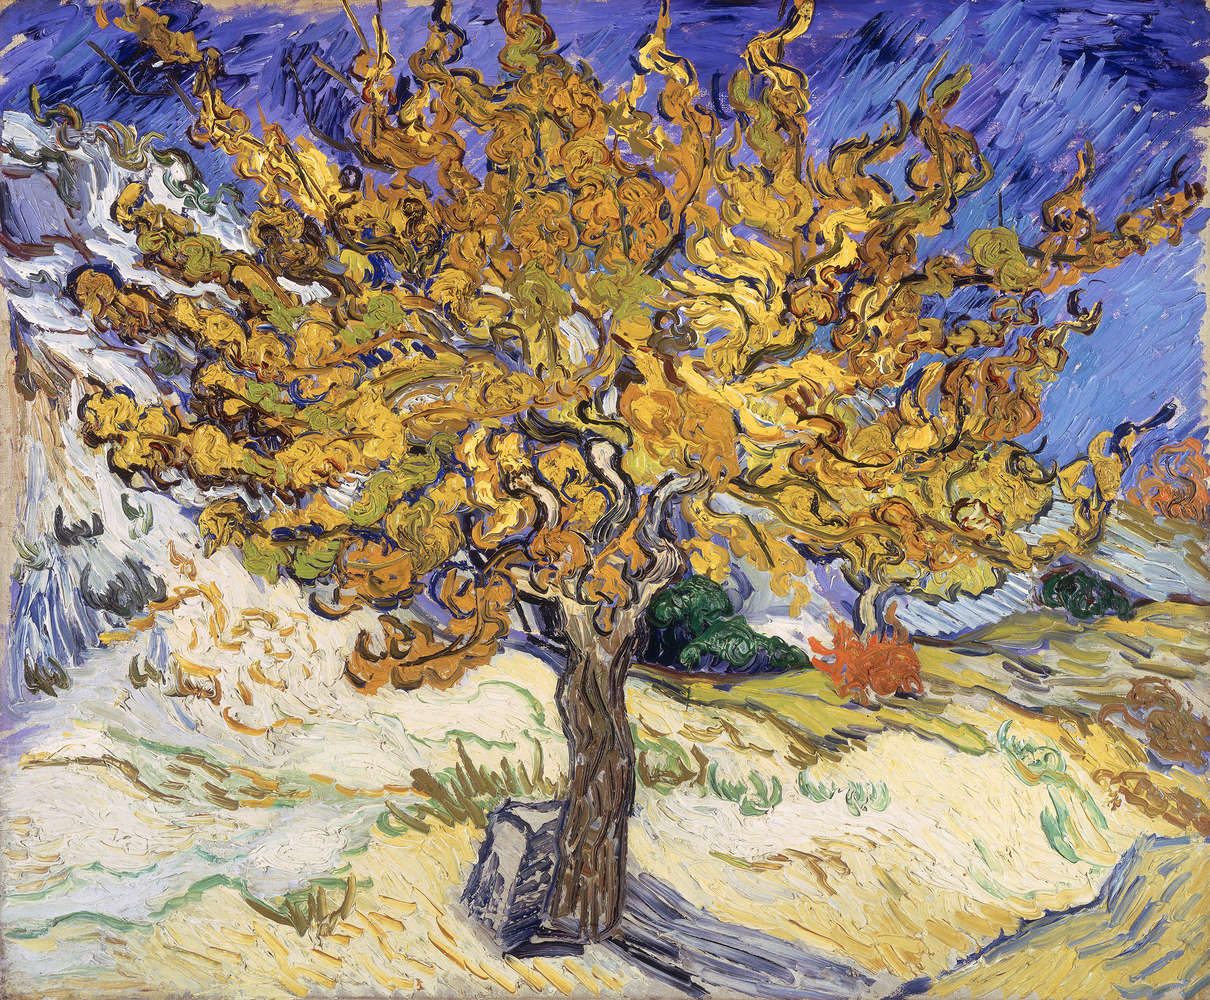             Mural "Mulberry Tree" de Vincent van Gogh
        